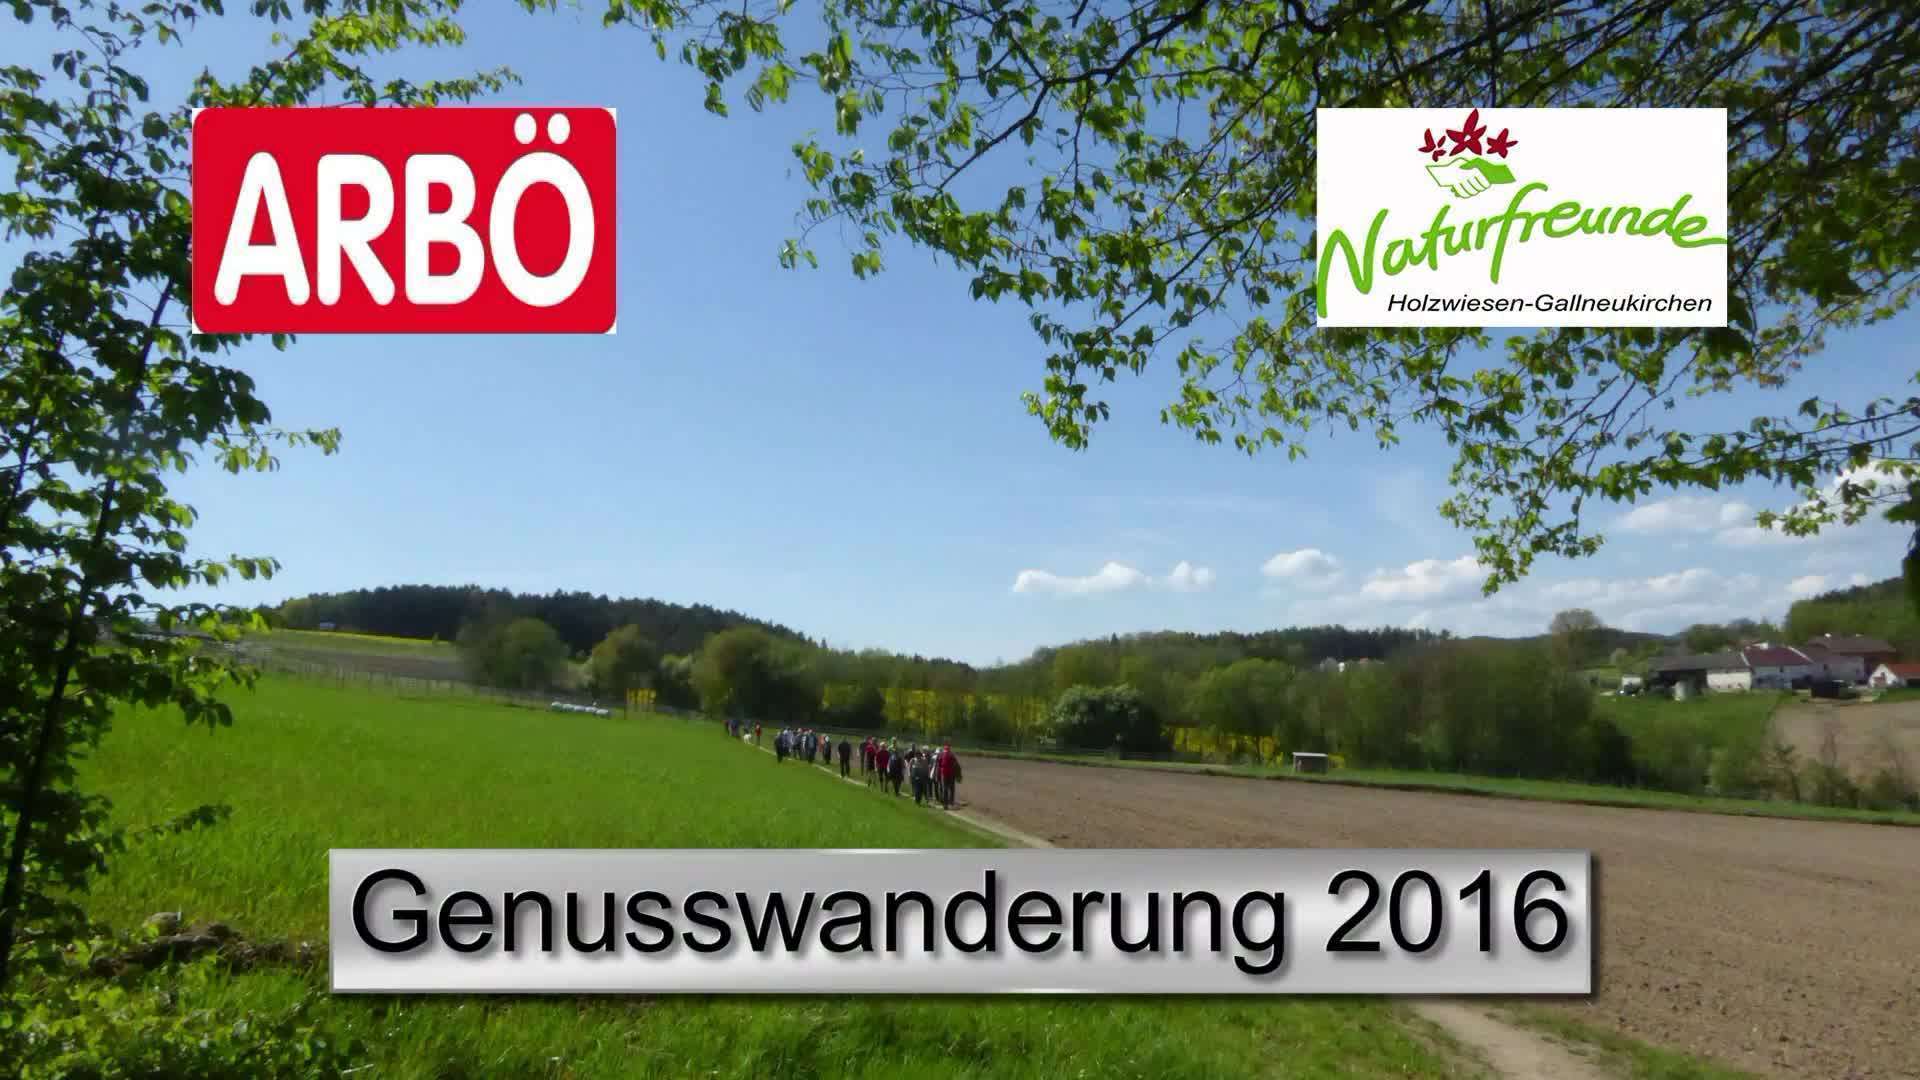 Genusswanderung 2016 ARBÖ&Naturfreunde